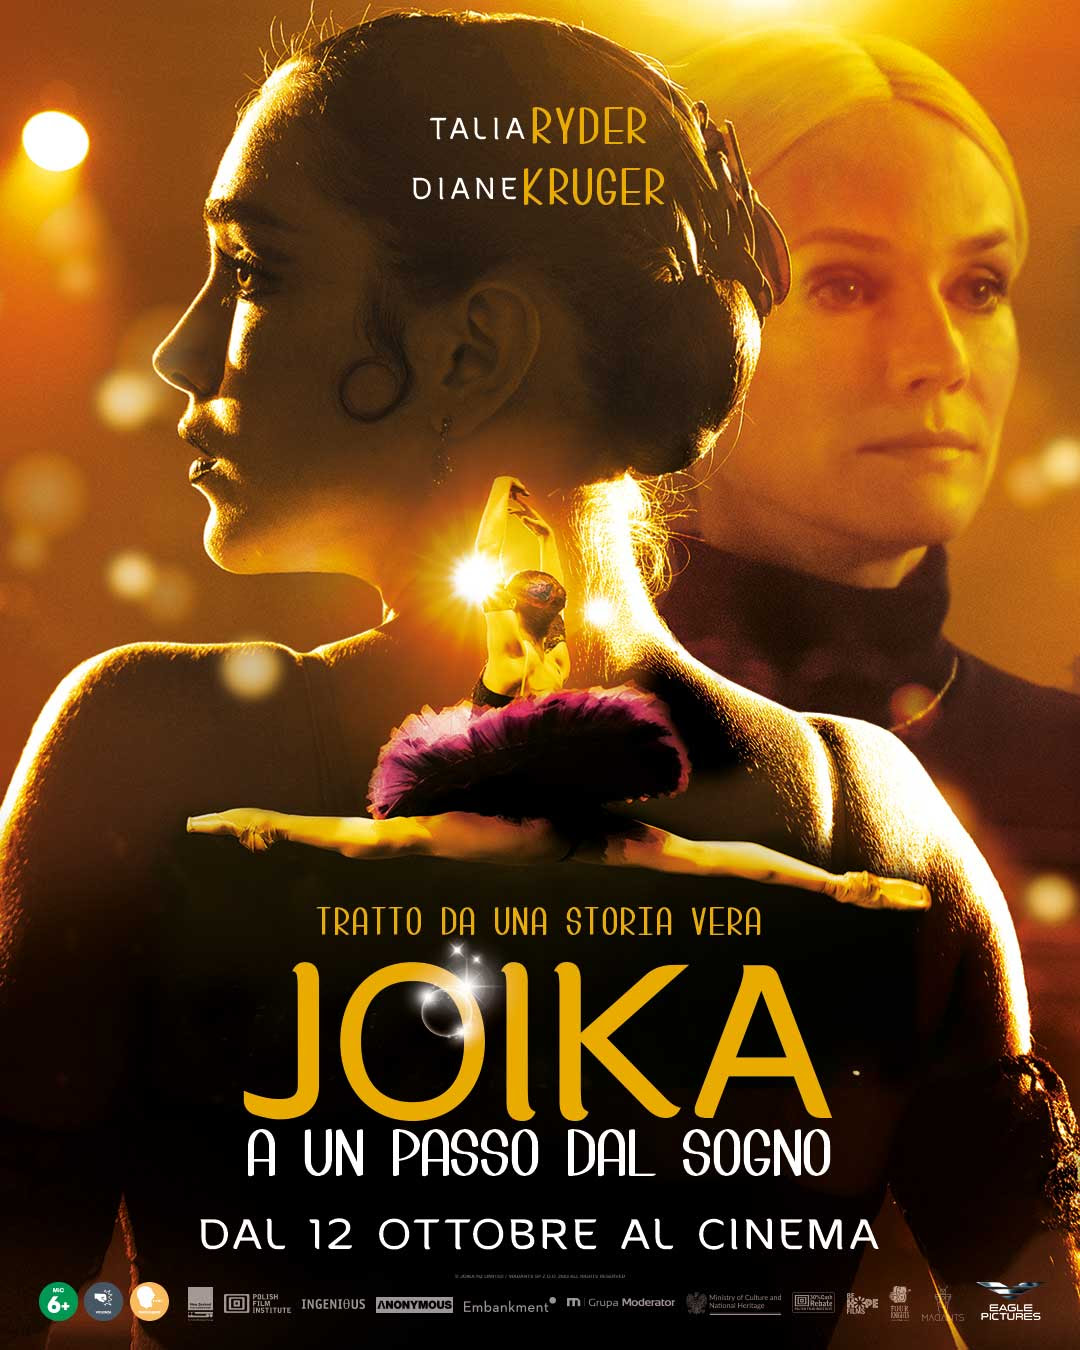 Joika - A un passo dal sogno al cinema da 12 ottobre